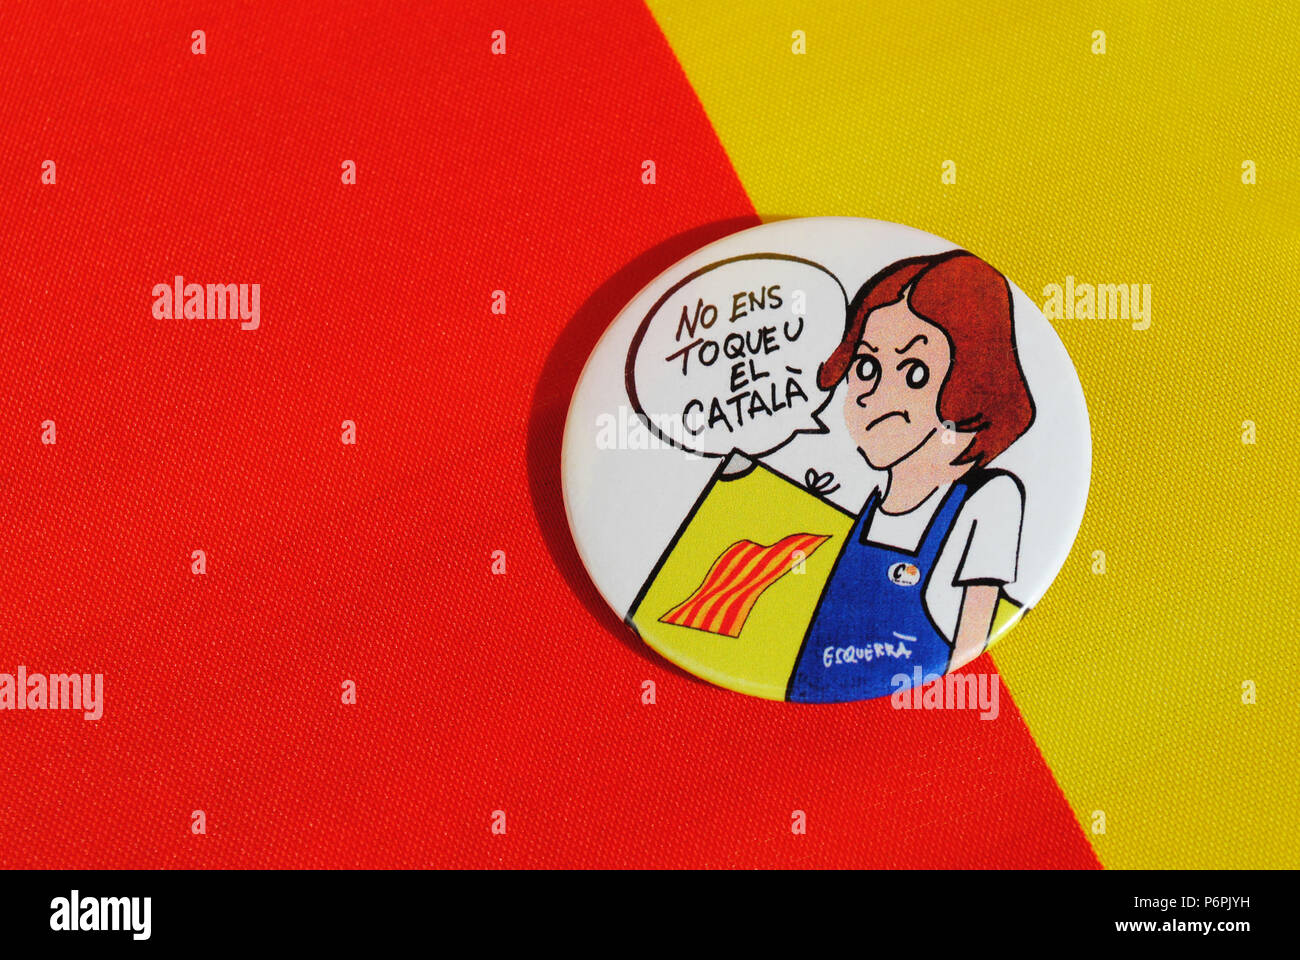 Ein kreisförmiges Abzeichen zu den roten und gelben Hintergrund zeigt eine Karikatur, die Studentin, die mit der Spanischen Sprache System geplant in der Bildung nicht einverstanden ist. Stockfoto